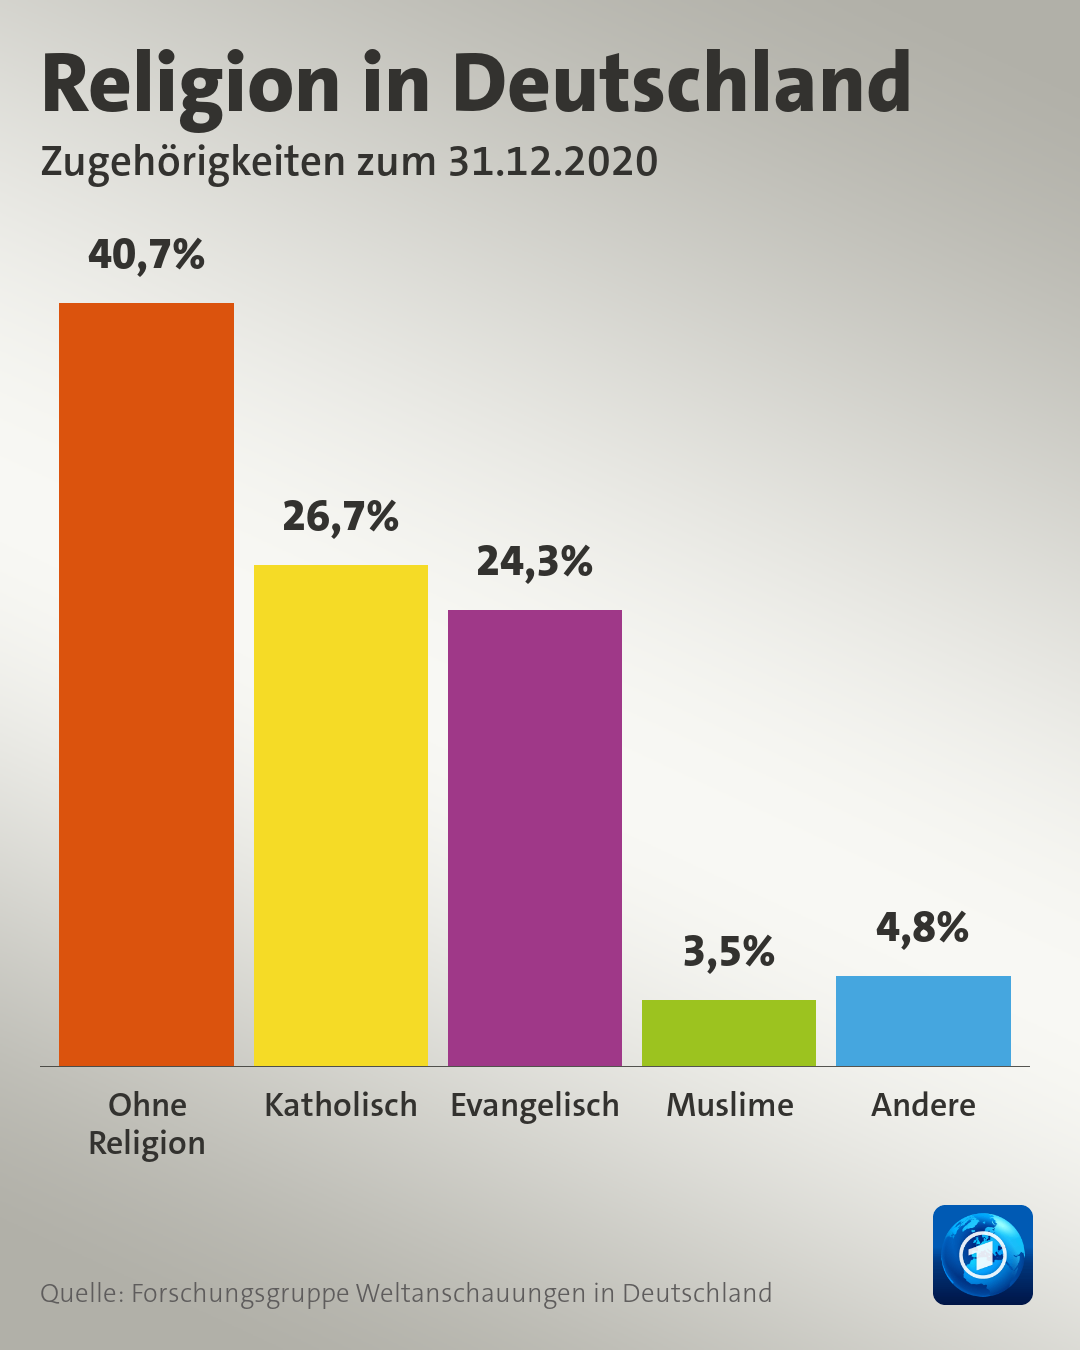 Religionszugehörigkeit in Deutschland. Quelle: fowid via ARD